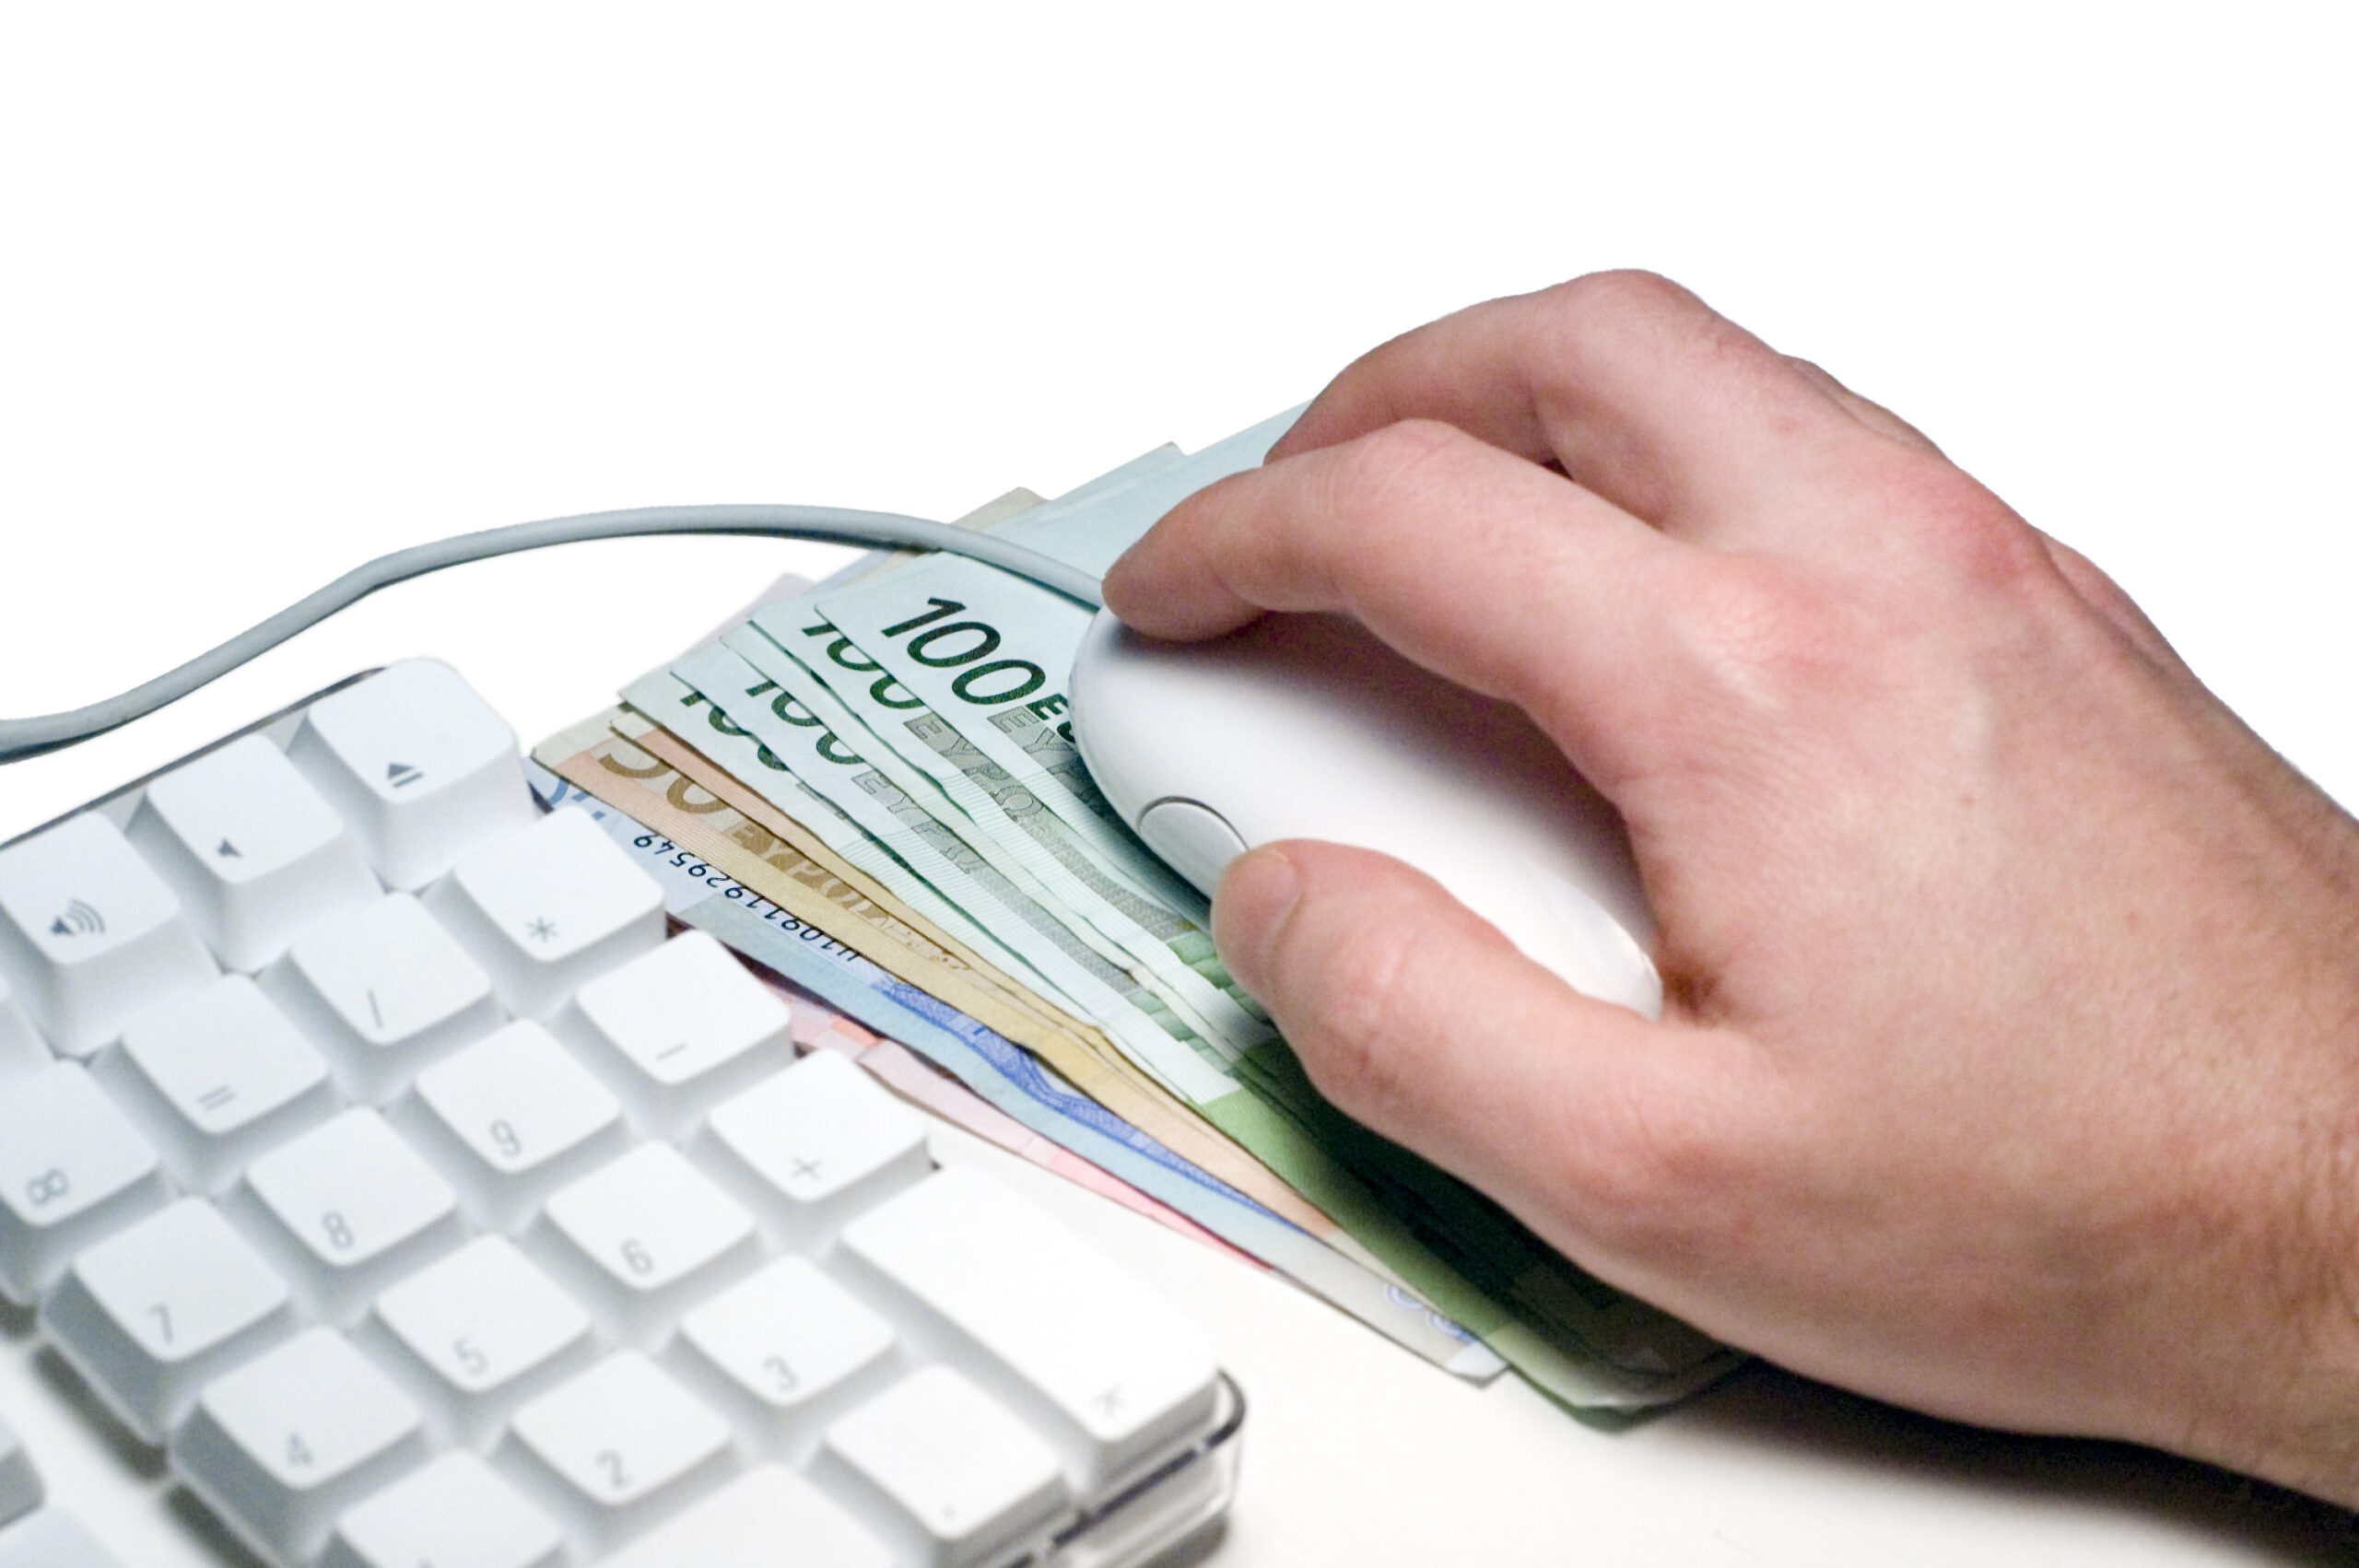 Prestiti personali, perché conviene confrontarli online?